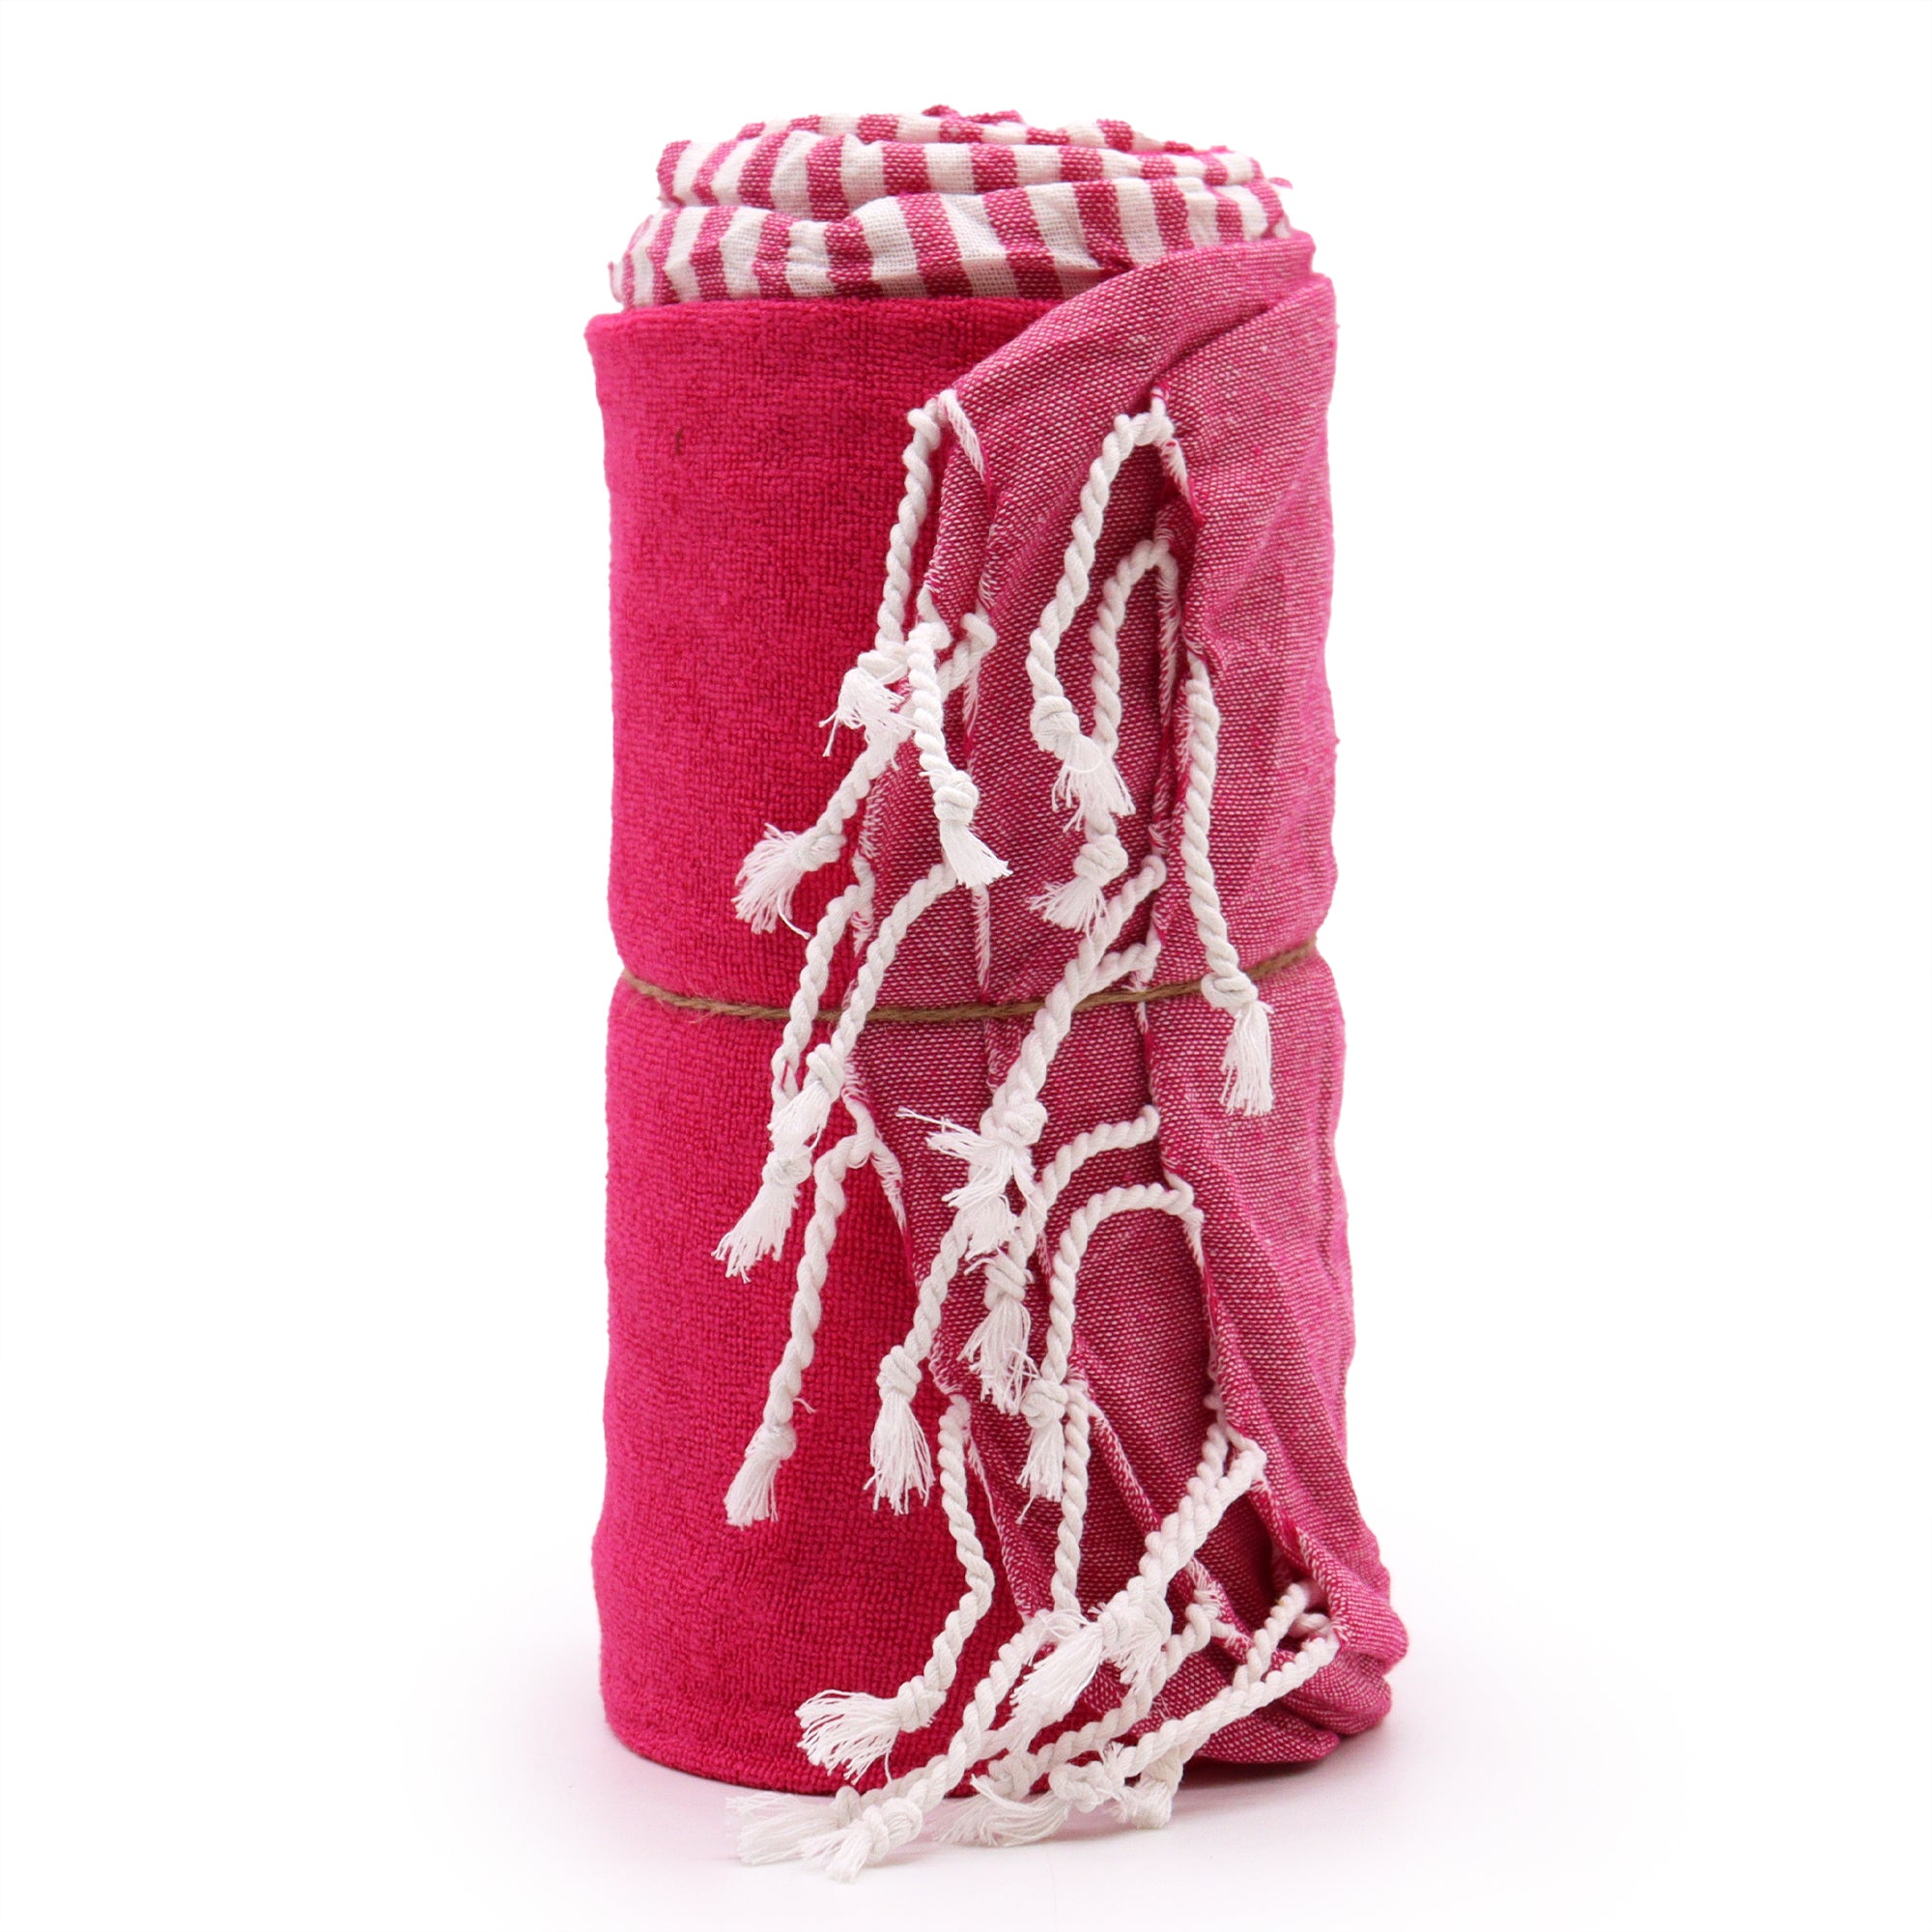 View Cotton Pario Towel 100x180 cm Hot Pink information